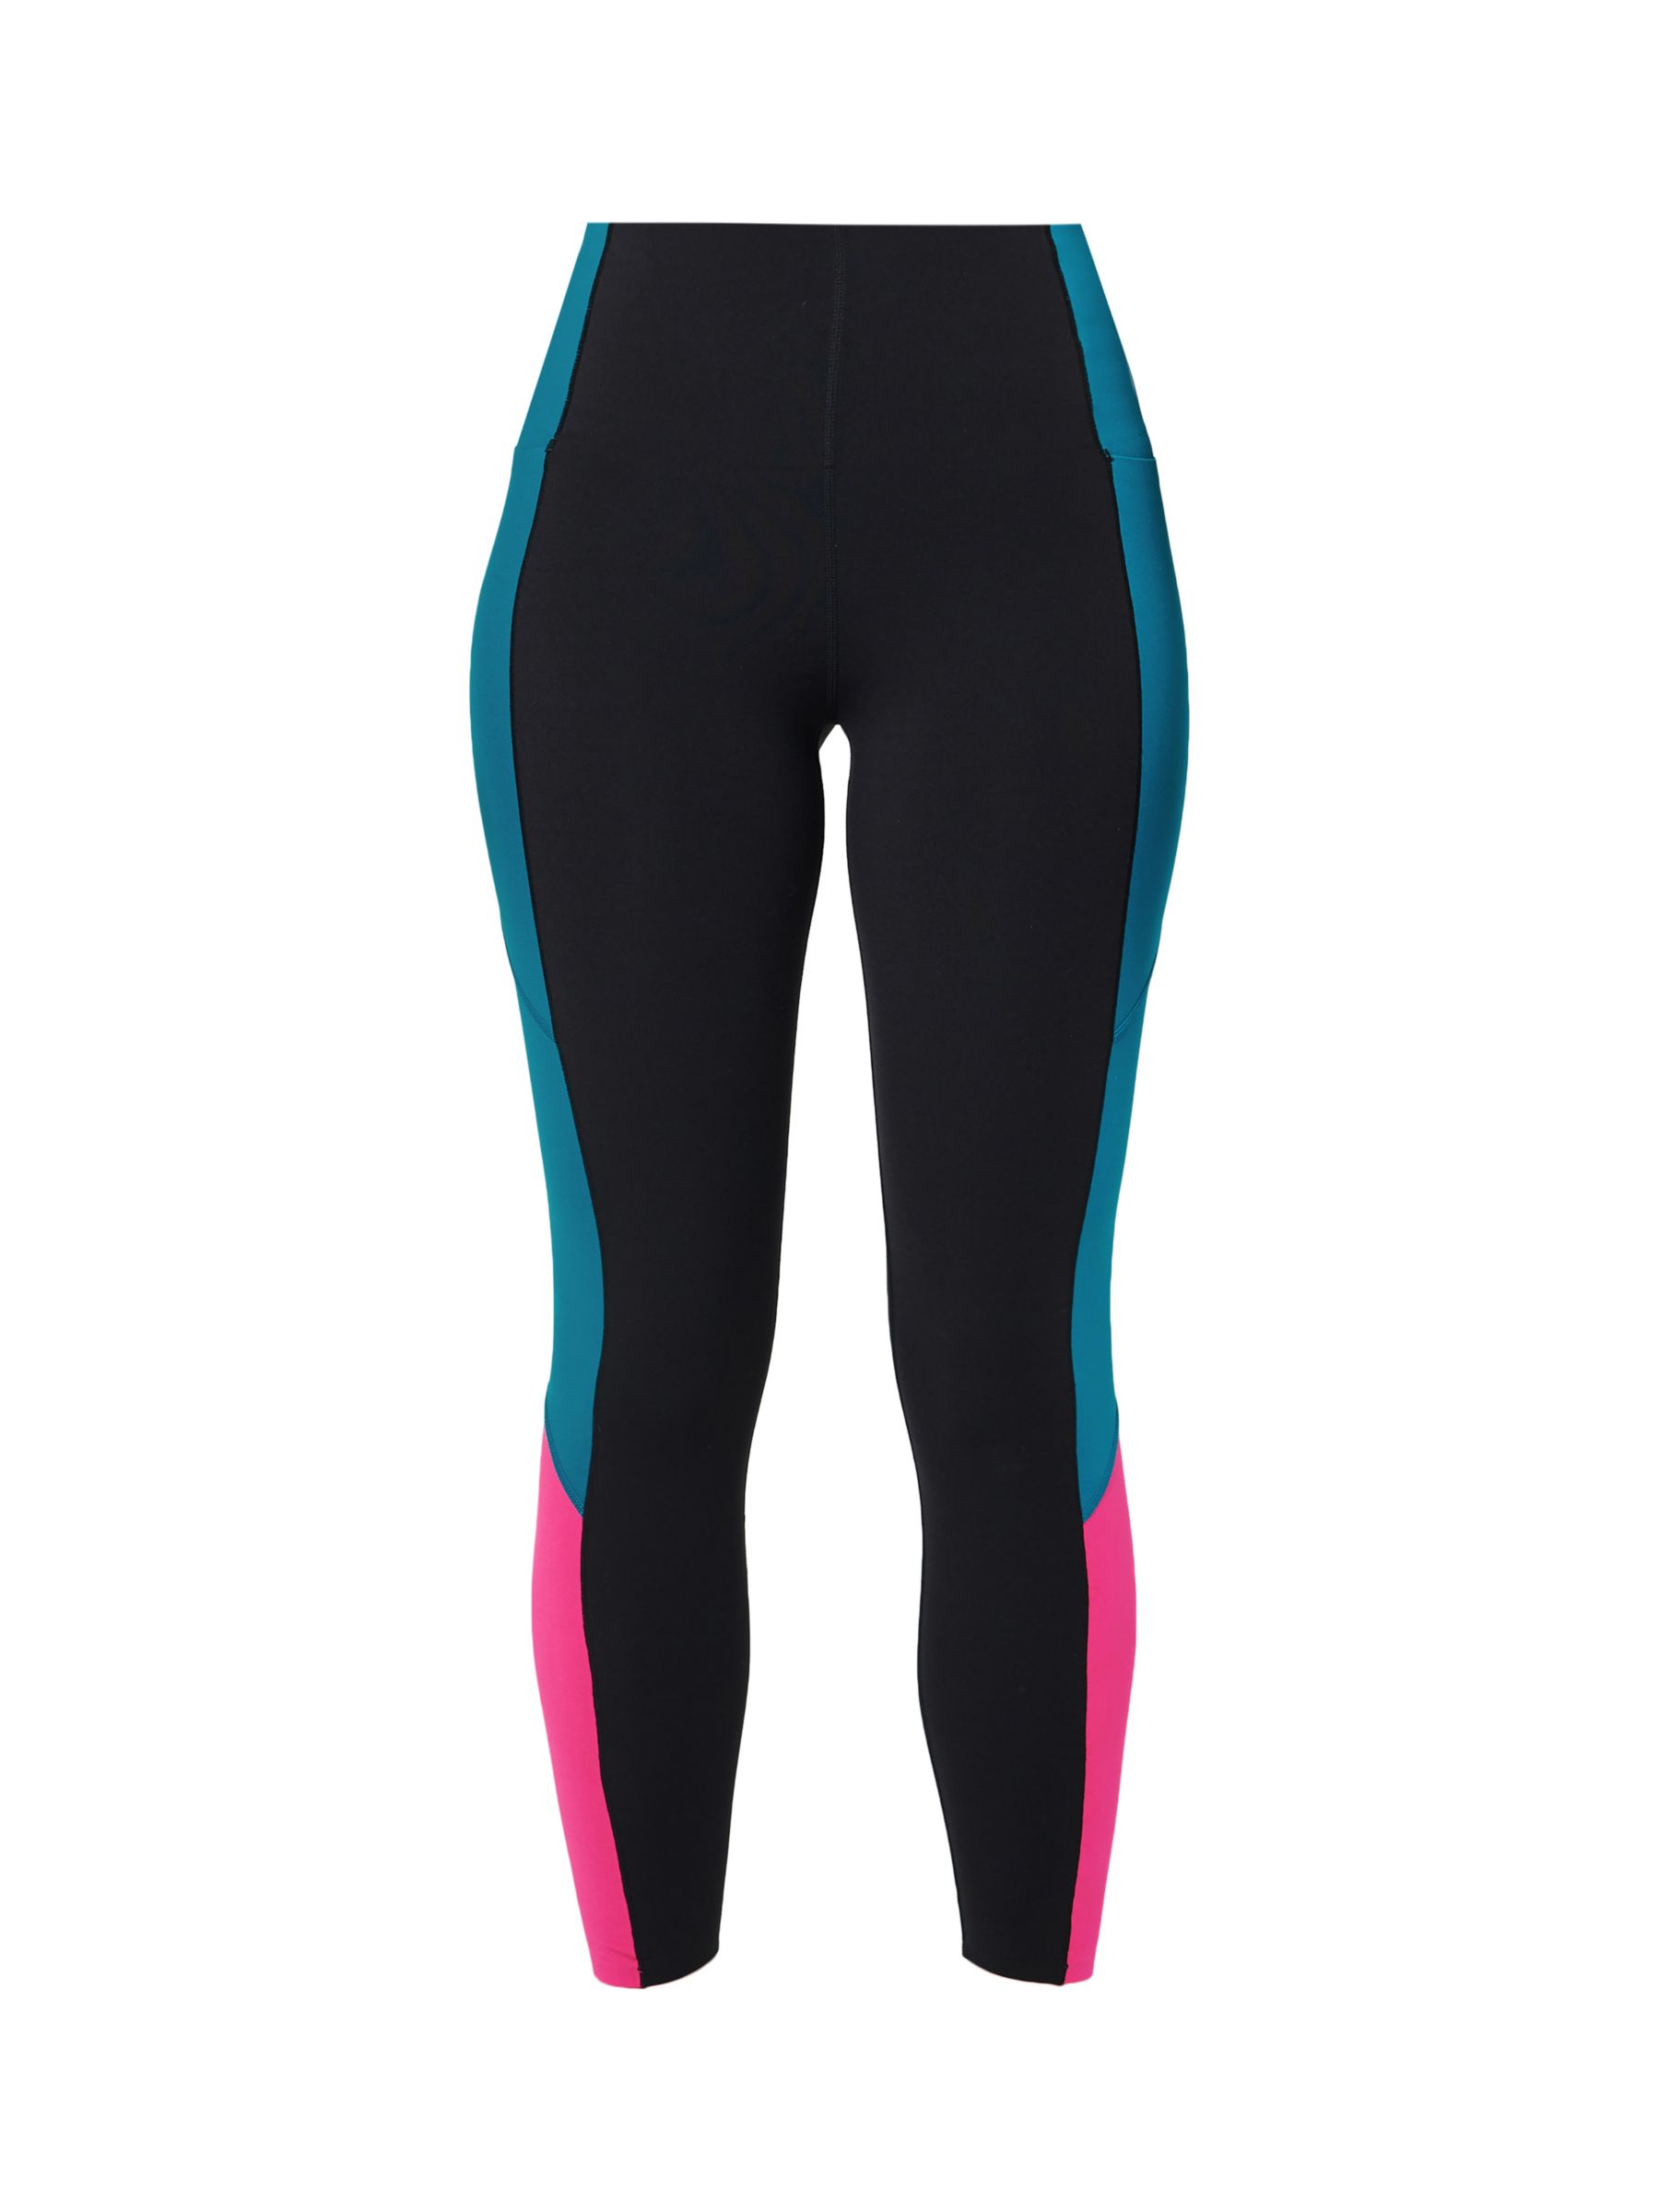 Sweaty Betty Power UltraSculpt High Waist 7/8 Workout Leggings, Black/Pink Reefteal, XXS